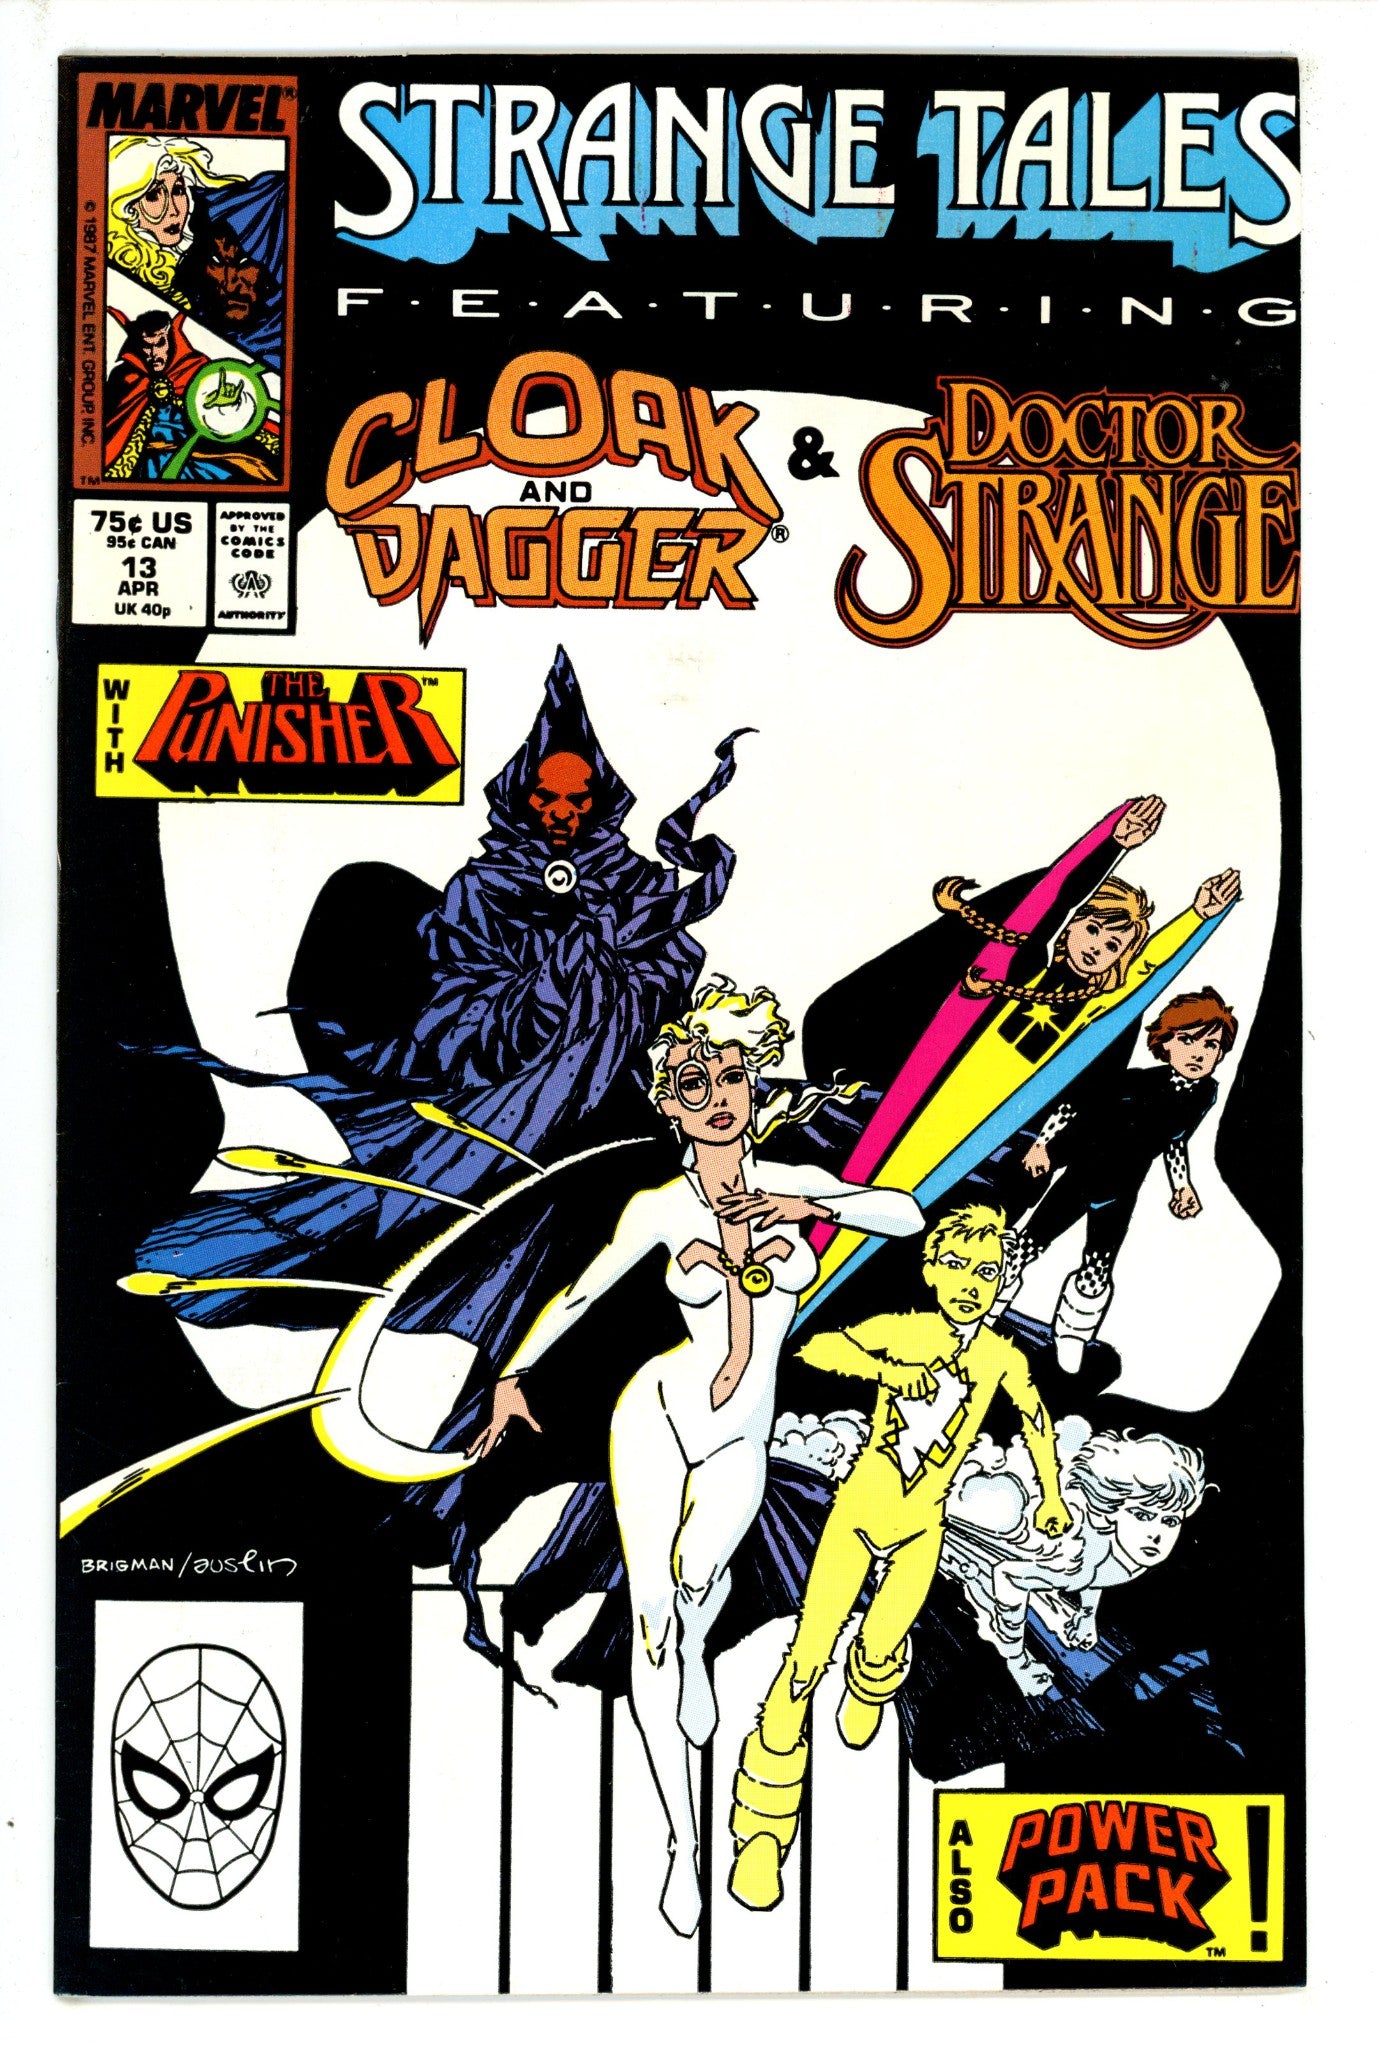 Strange Tales Vol 2 13 (1987)